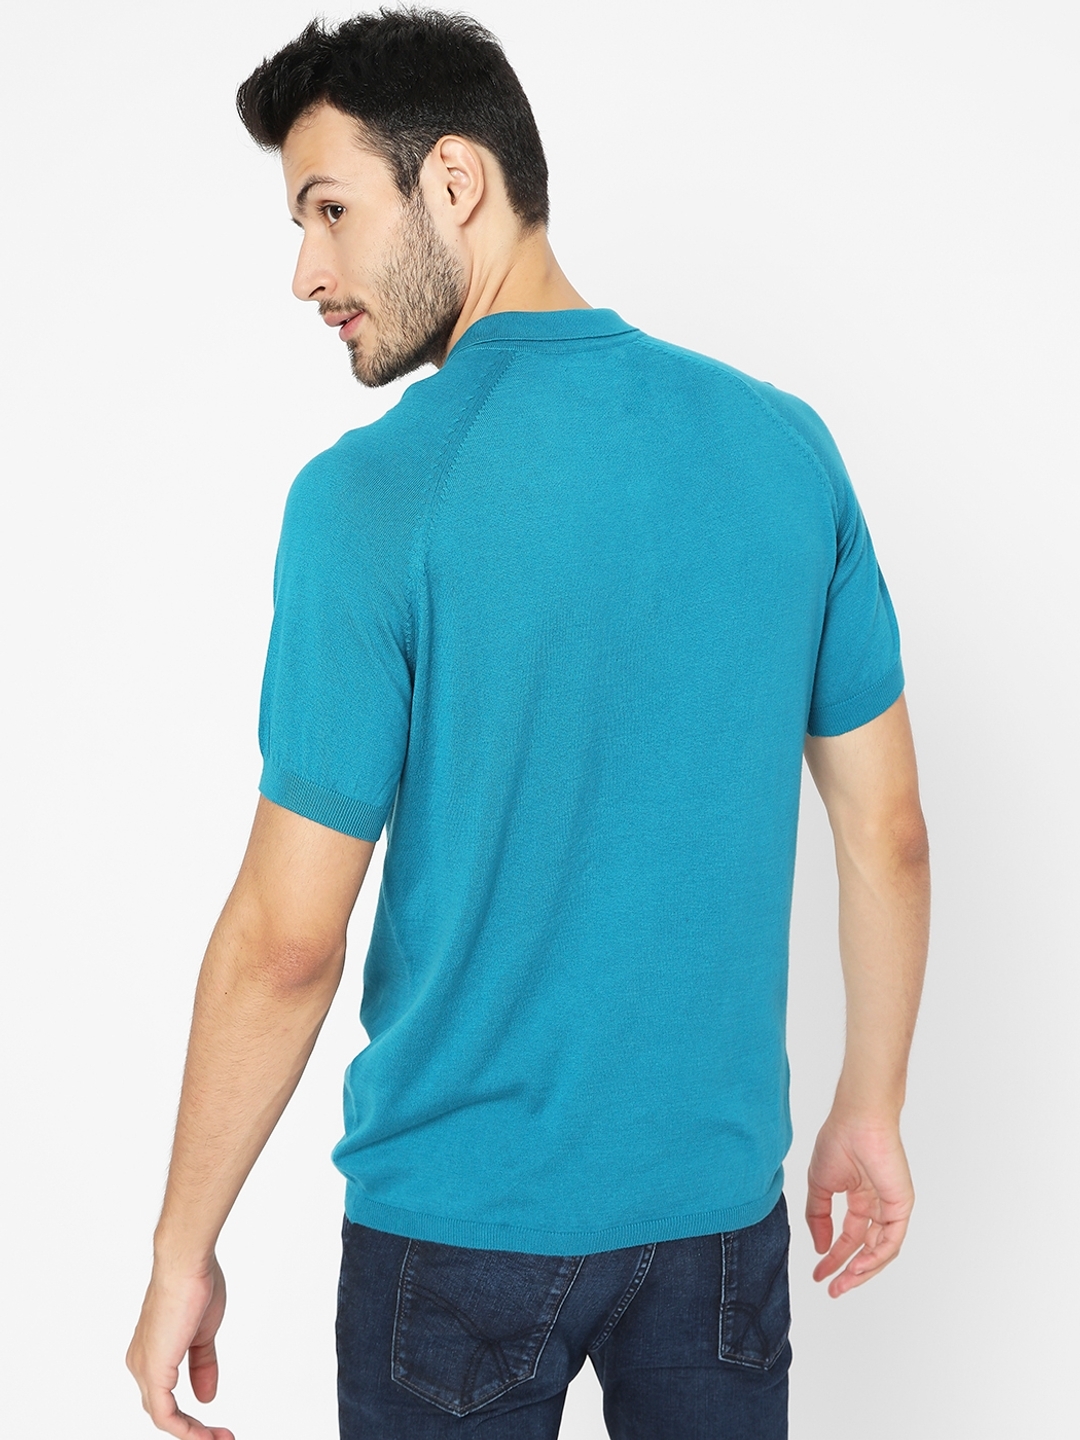 Polo T-shirt with Raglan Sleeves